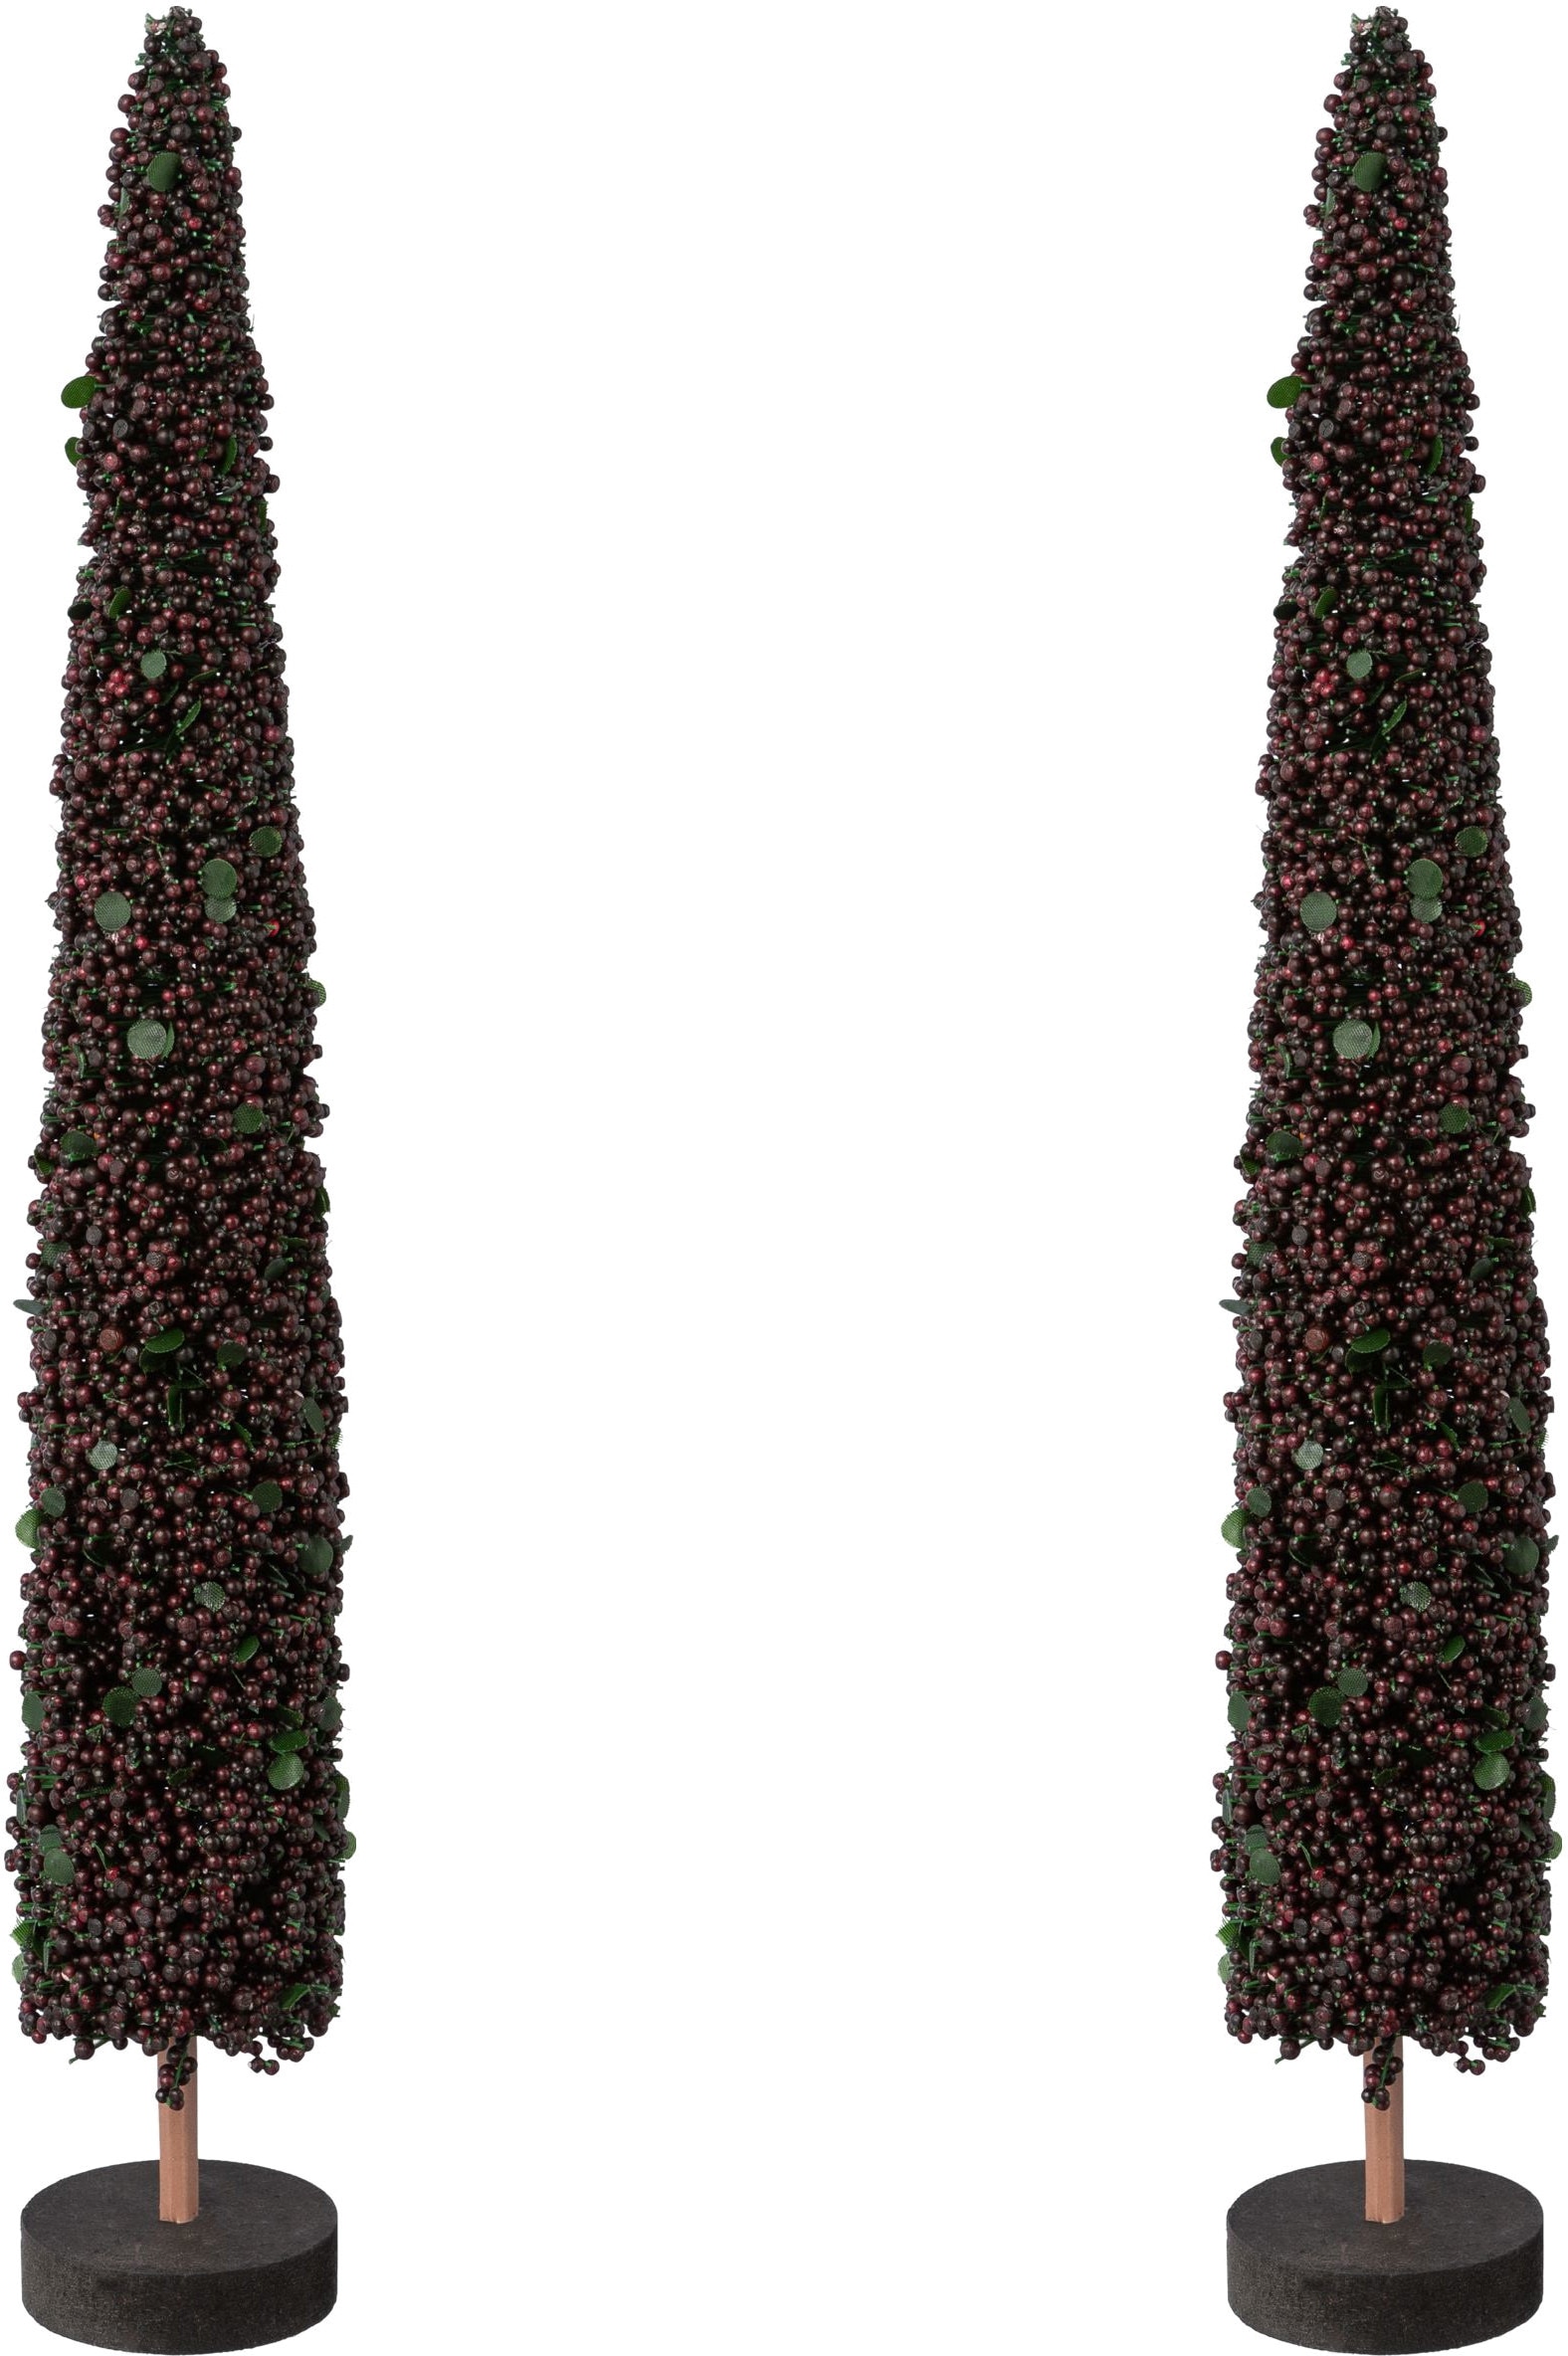 Creativ deco Dekobaum »Weihnachtsdeko«, auf hochwertiger Holzbase, mit Perlen verziert, Höhe 38 cm